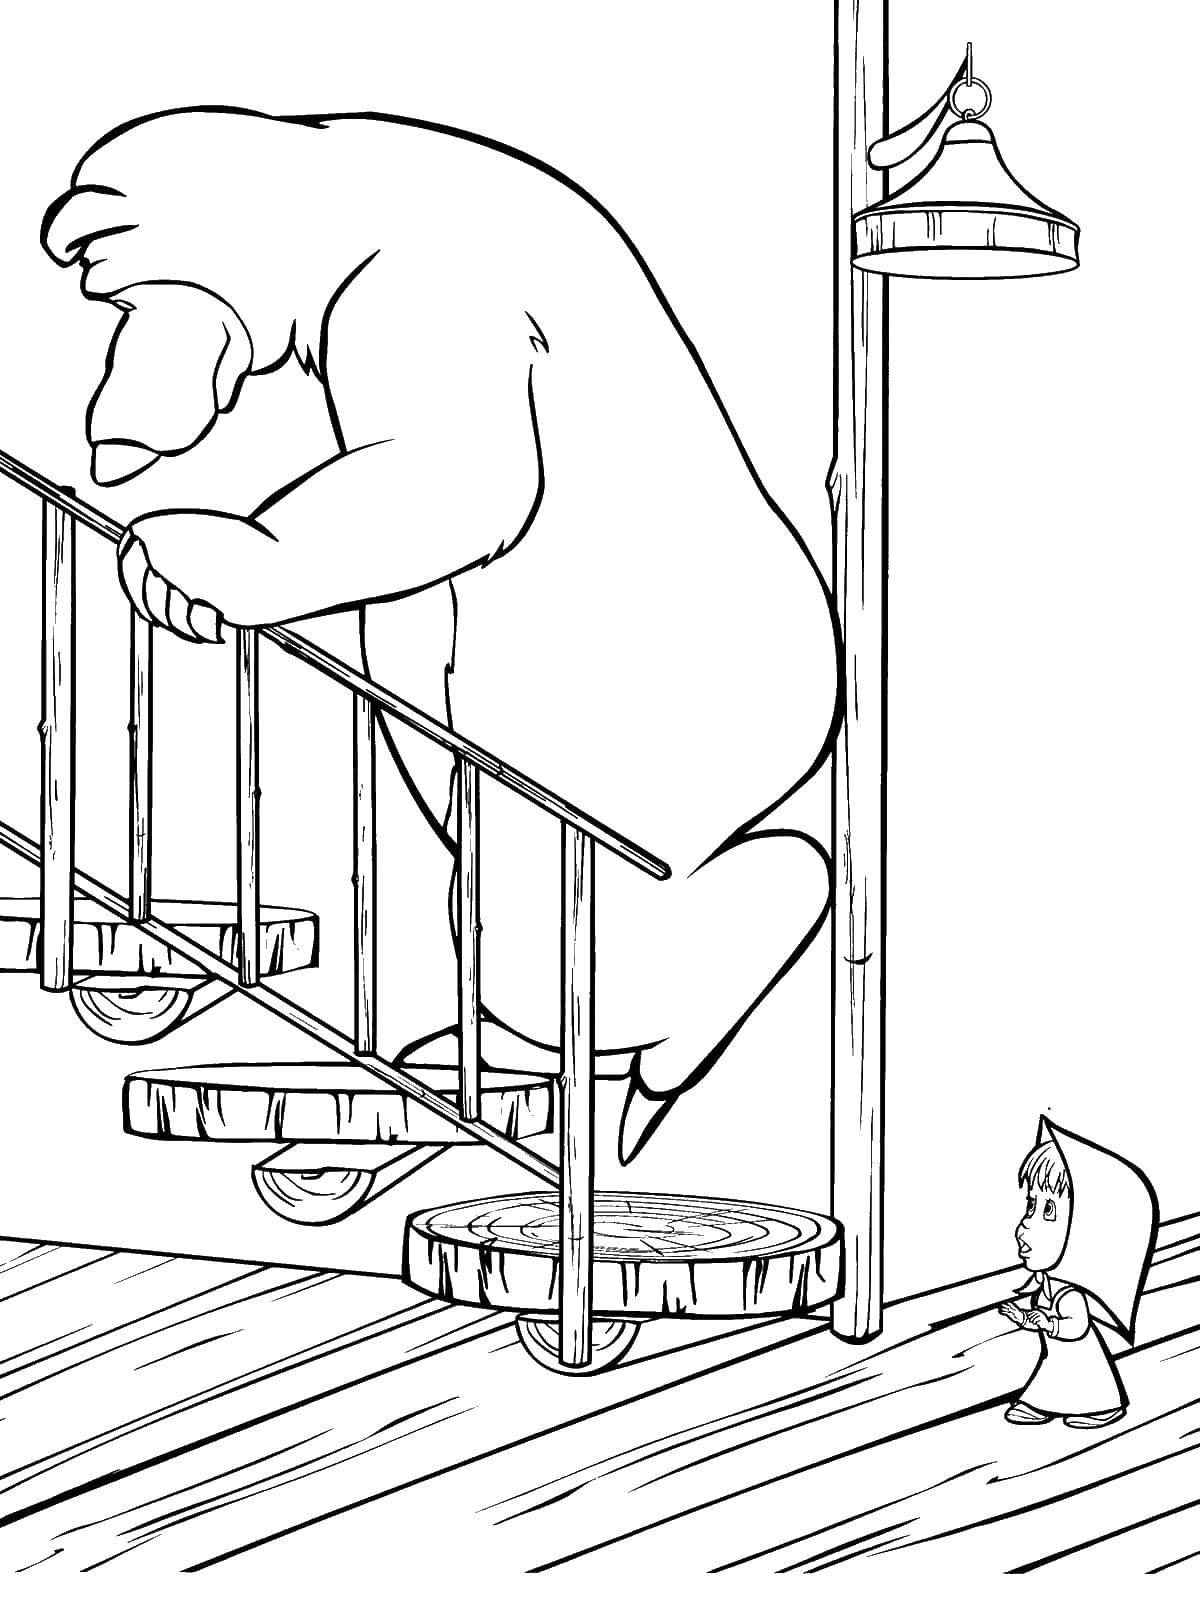 Раскраски для детей про озорную Машу из мультфильма Маша и медведь  Миша поднимается по лестнице